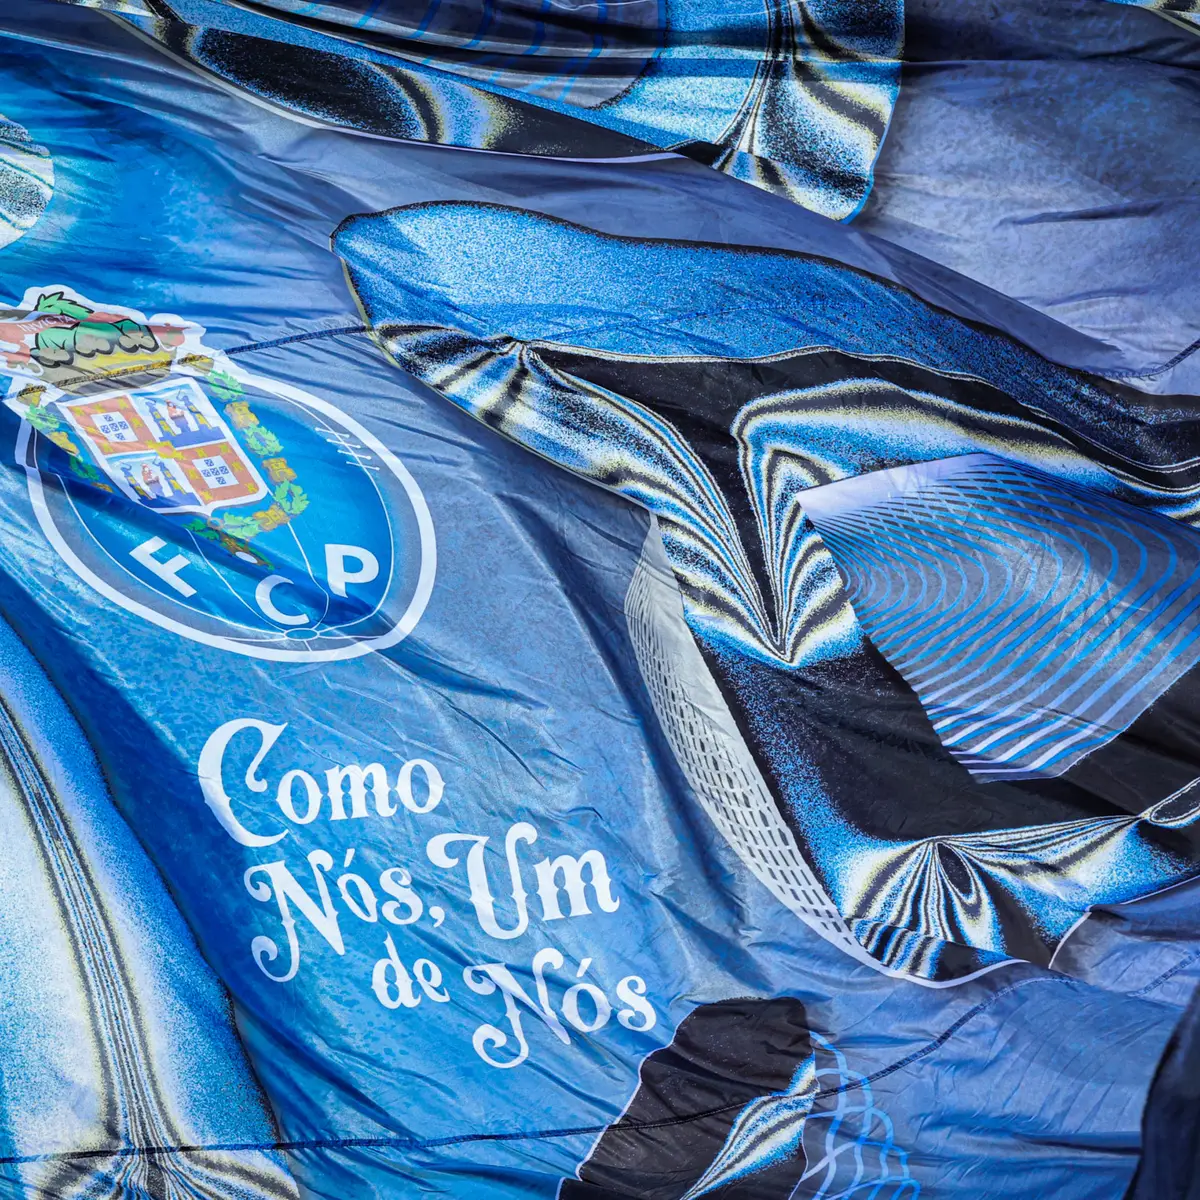 Crise no FC Porto: Claque e Sócios do clube em cenas de violência na AG